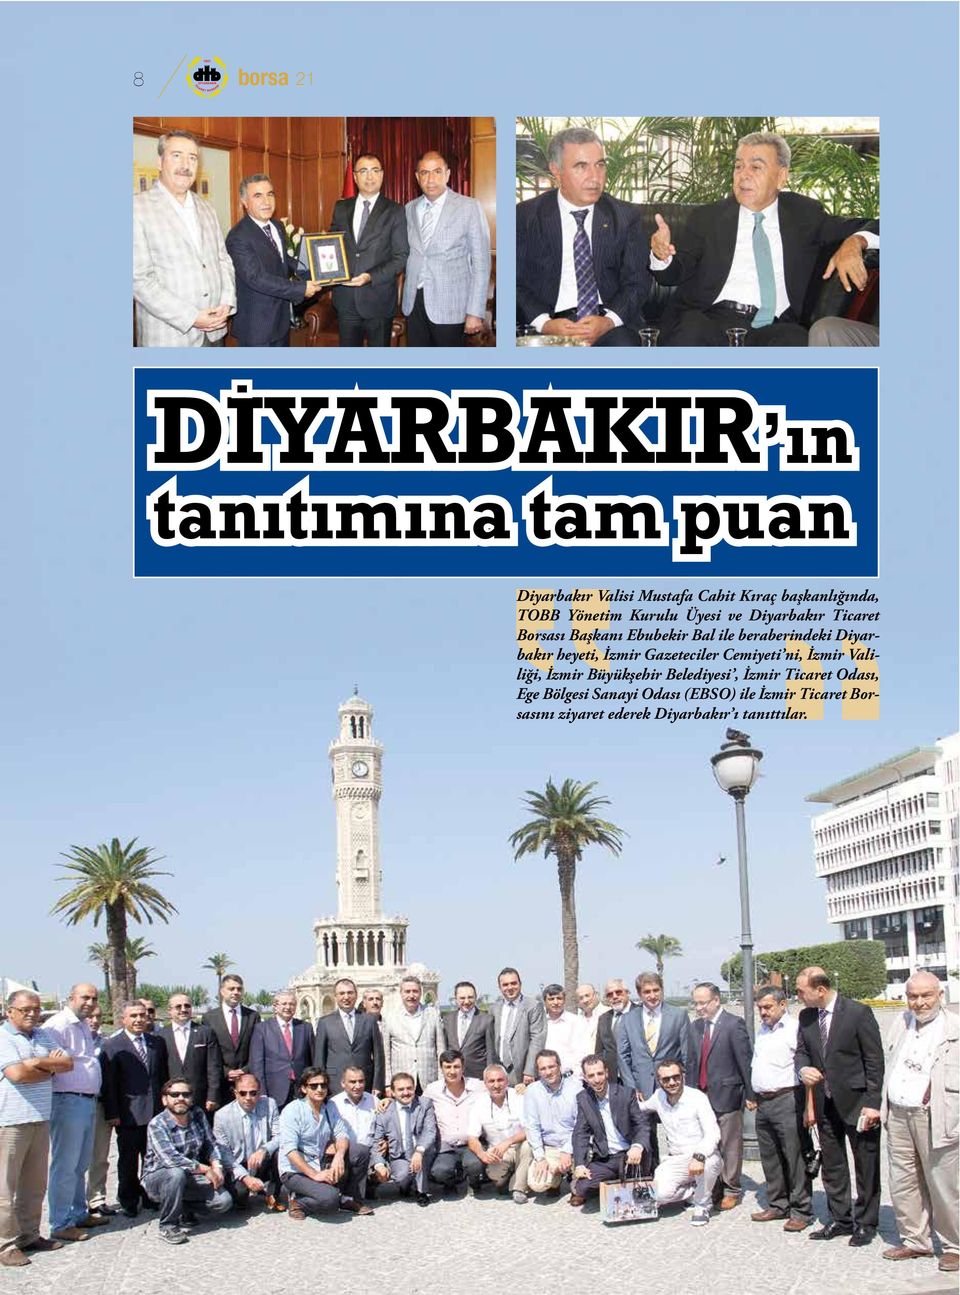 Diyarbakır Ticaret Borsası Başkanı Ebubekir Bal ile beraberindeki Diyarbakır heyeti, İzmir